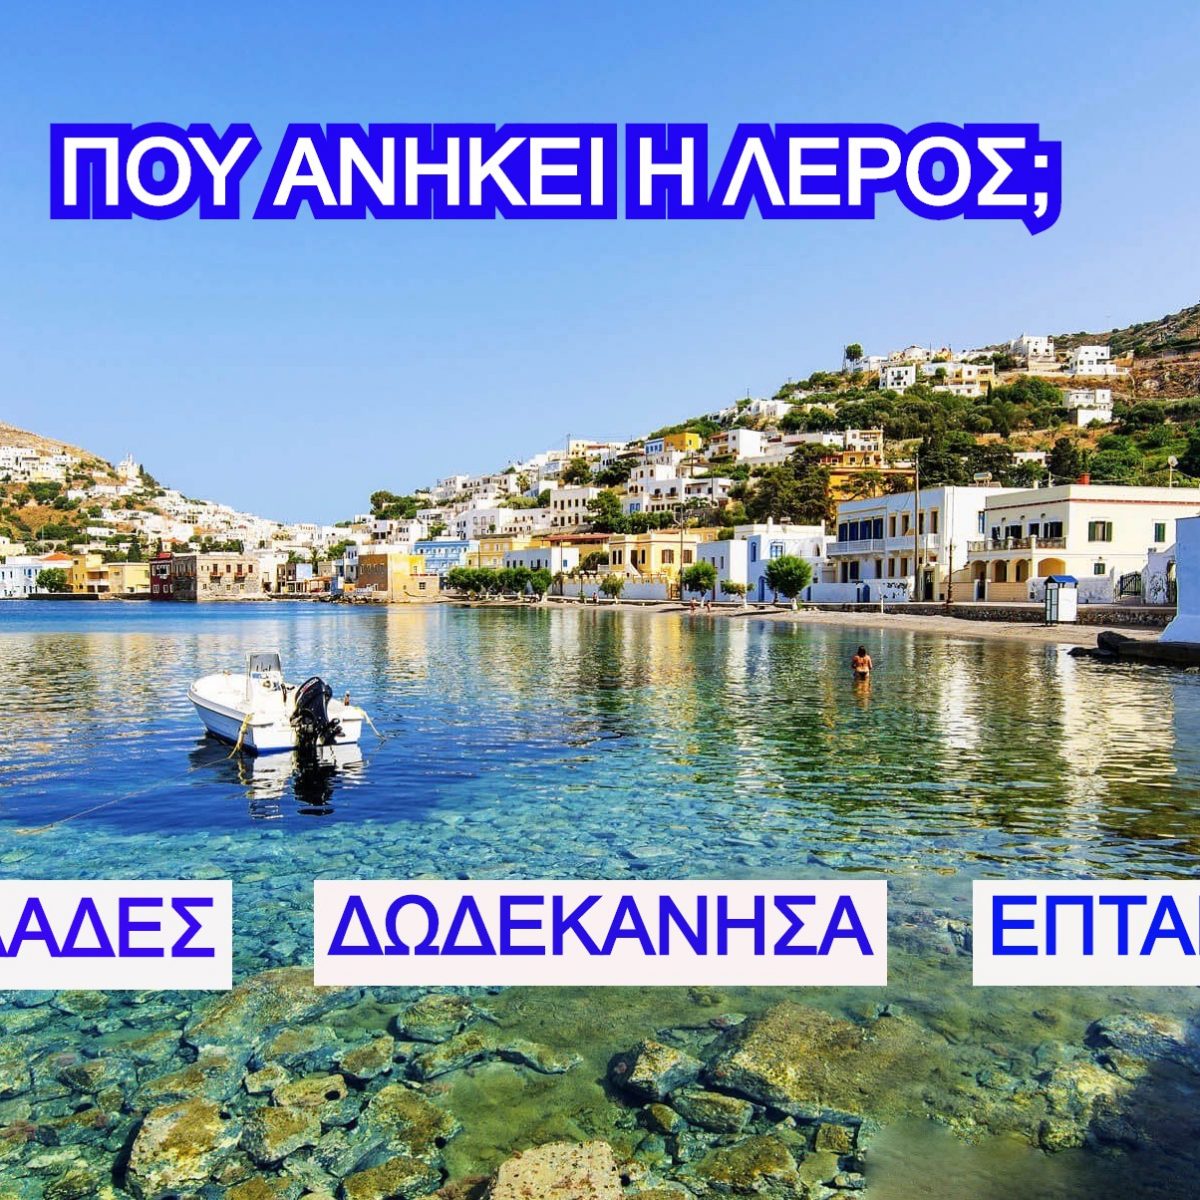 ΤΕΣΤ: Σου δίνουμε το Ελληνικό Νησί, βρίσκεις αν ανήκει στις Κυκλάδες, στα Επτάνησα  ή στα Δωδεκάνησα;